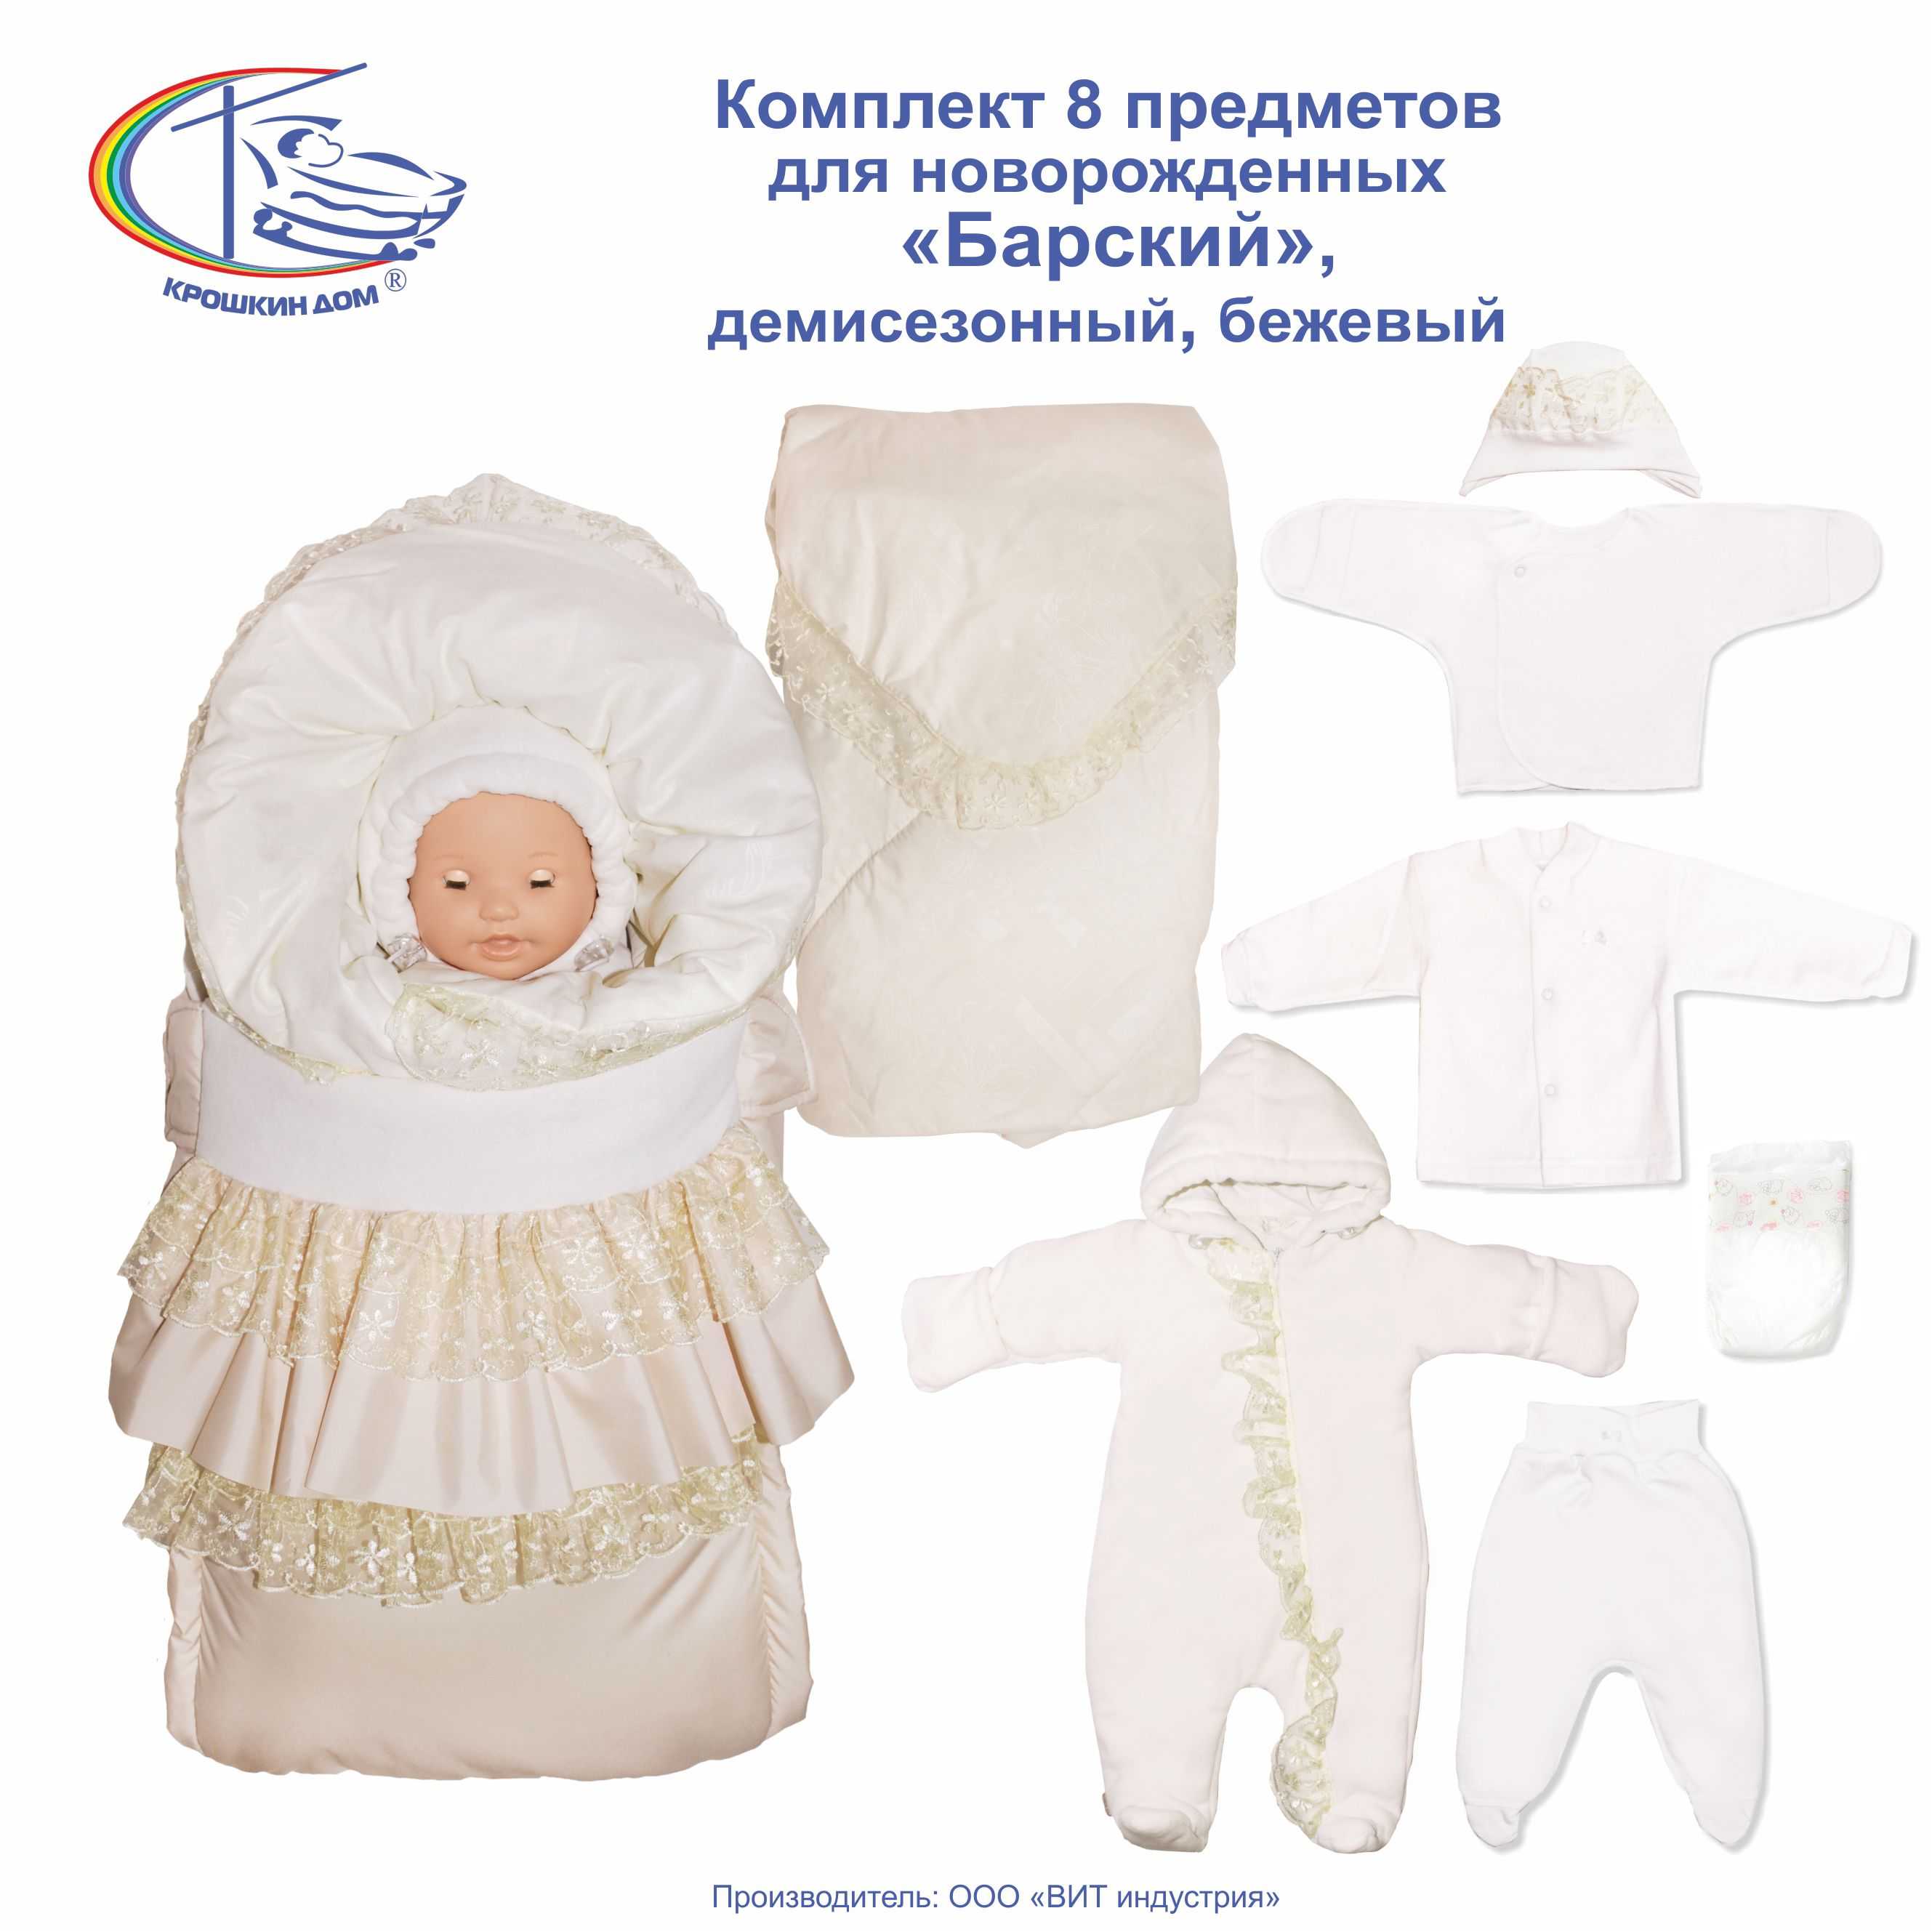 Как нужно одевать младенца на выписку летом, весной, зимой, осенью